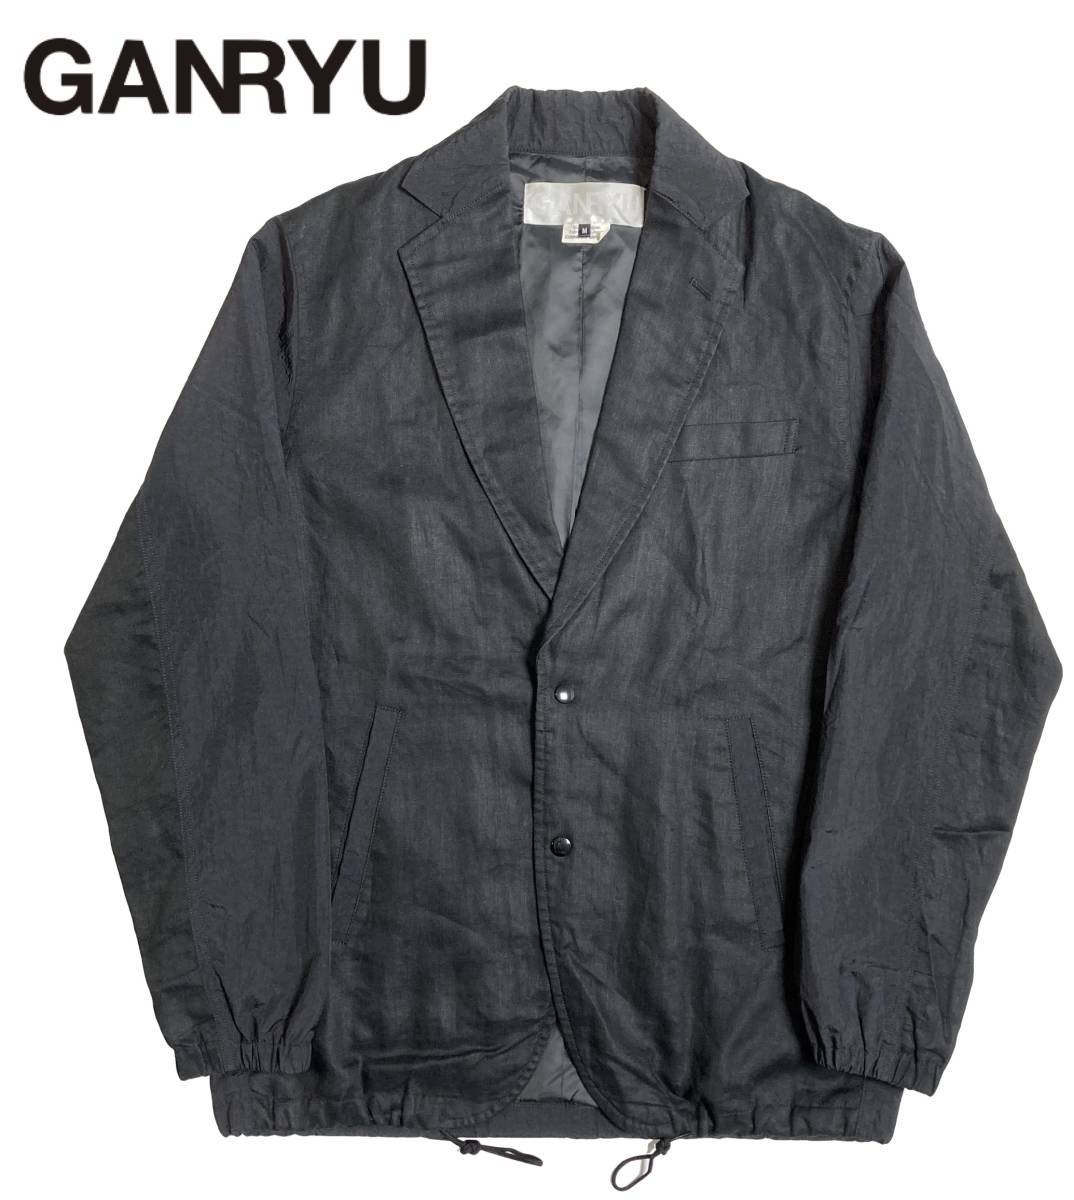 ヤフオク! -「ganryu ジャケット」(ファッション) の落札相場・落札価格